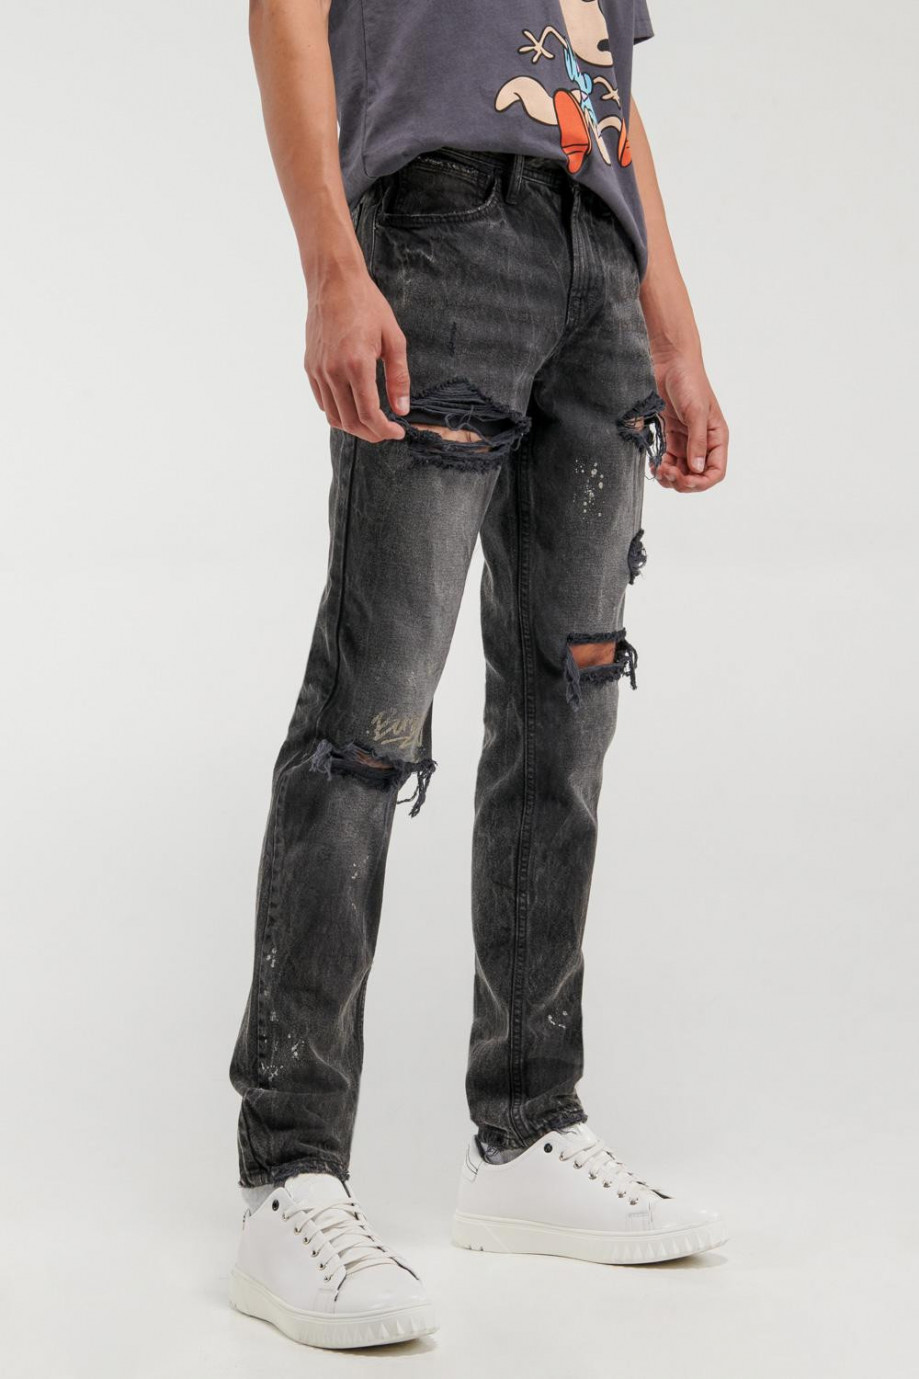 Jean skinny negro tiro bajo con rotos y diseños estampados